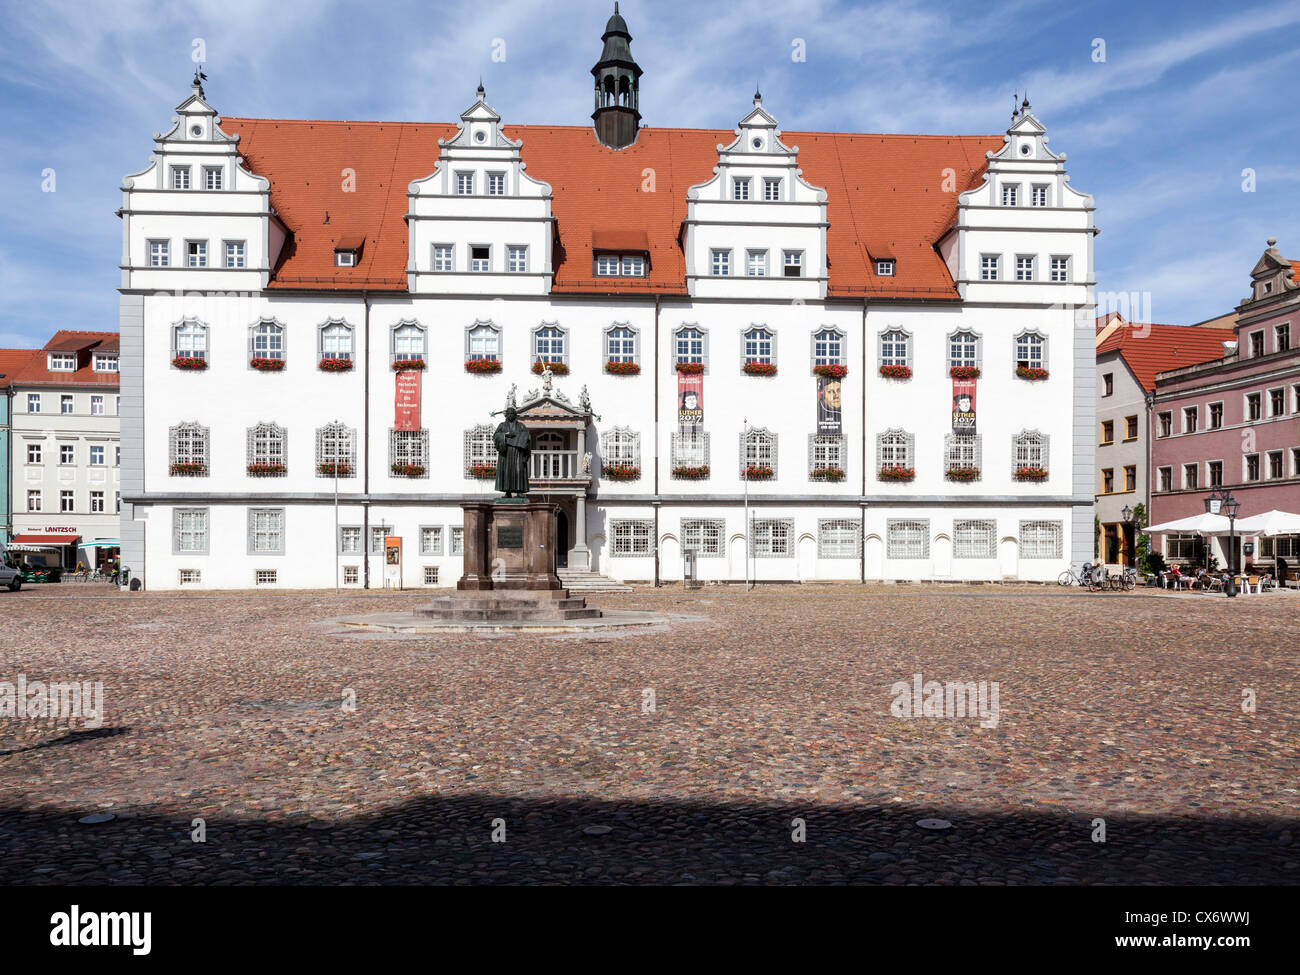 Rathaus und Marktplatz, Lutherstadt Wittenberg, Sachsen Anhalt, Deutschland Stockfoto